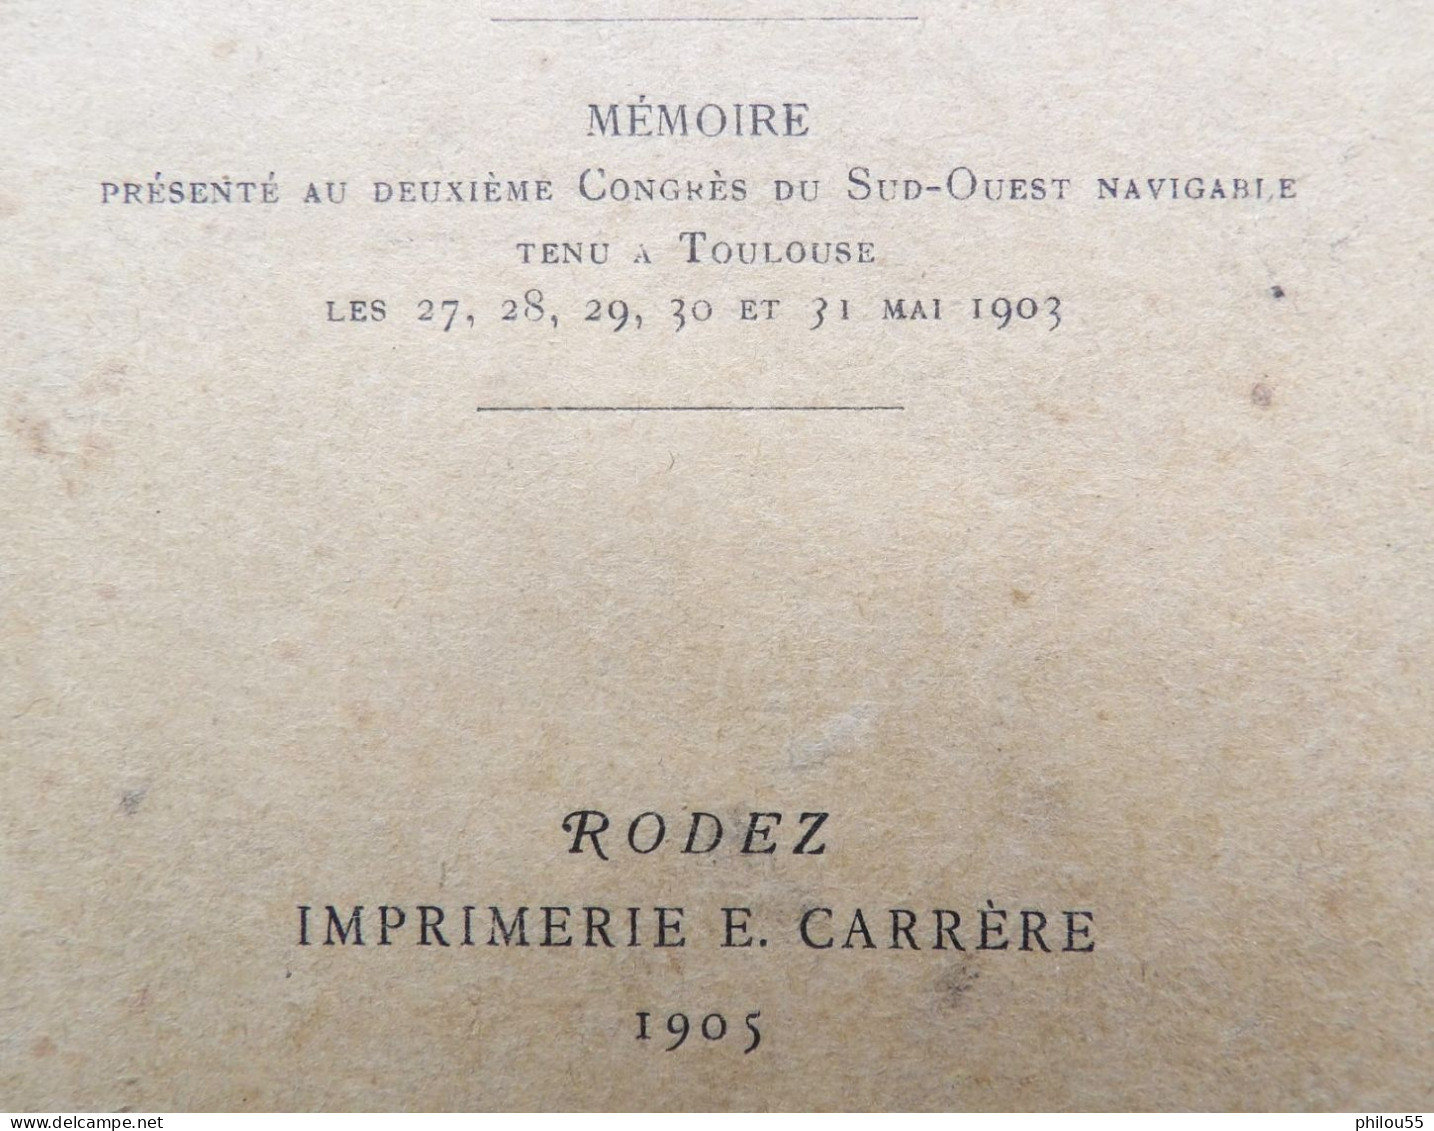 12 AVEYRON 1905 Regime Des Cours D'Eau Du Departement Et Question De Reboisement Par P. BUFFAULT - Midi-Pyrénées